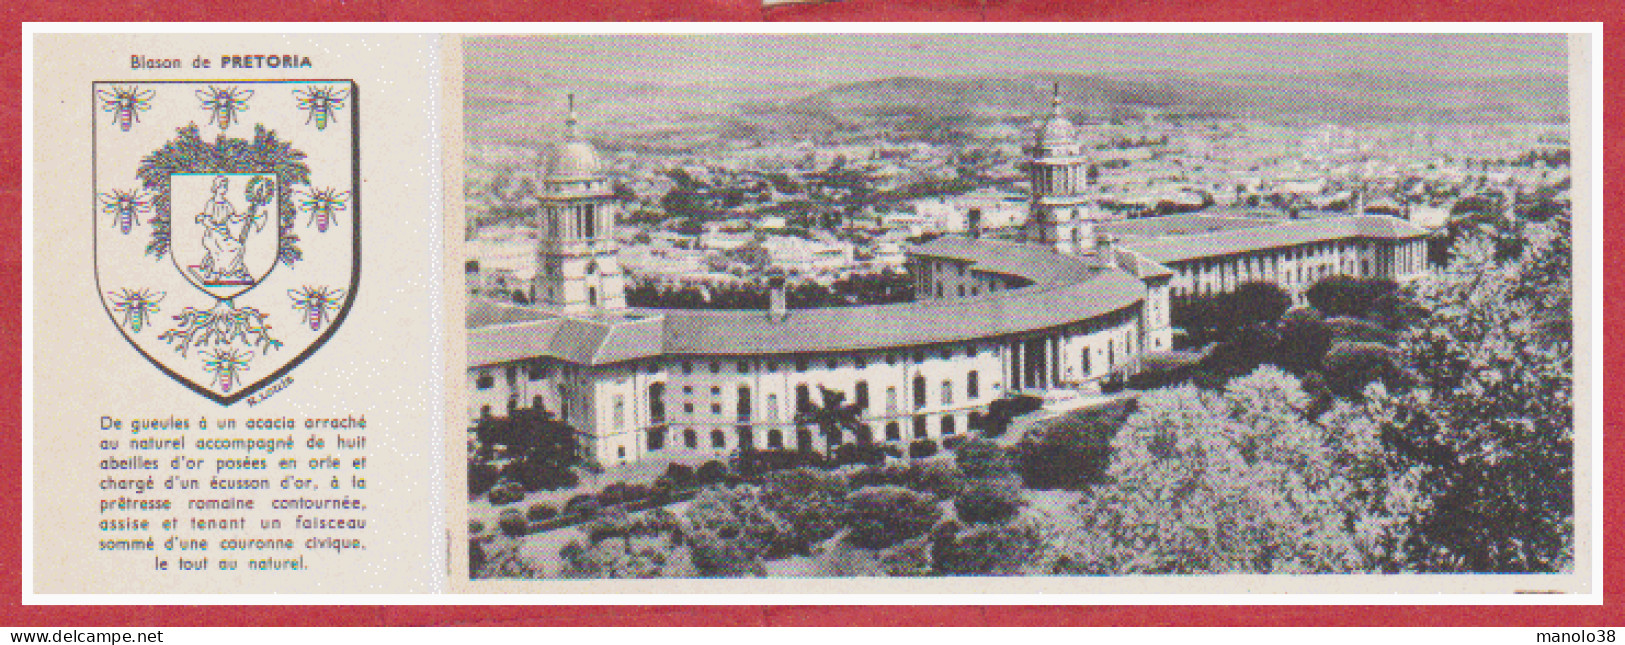 Pretoria. Afrique Du Sud. Union Building. Armoiries. Larousse 1960. - Documents Historiques